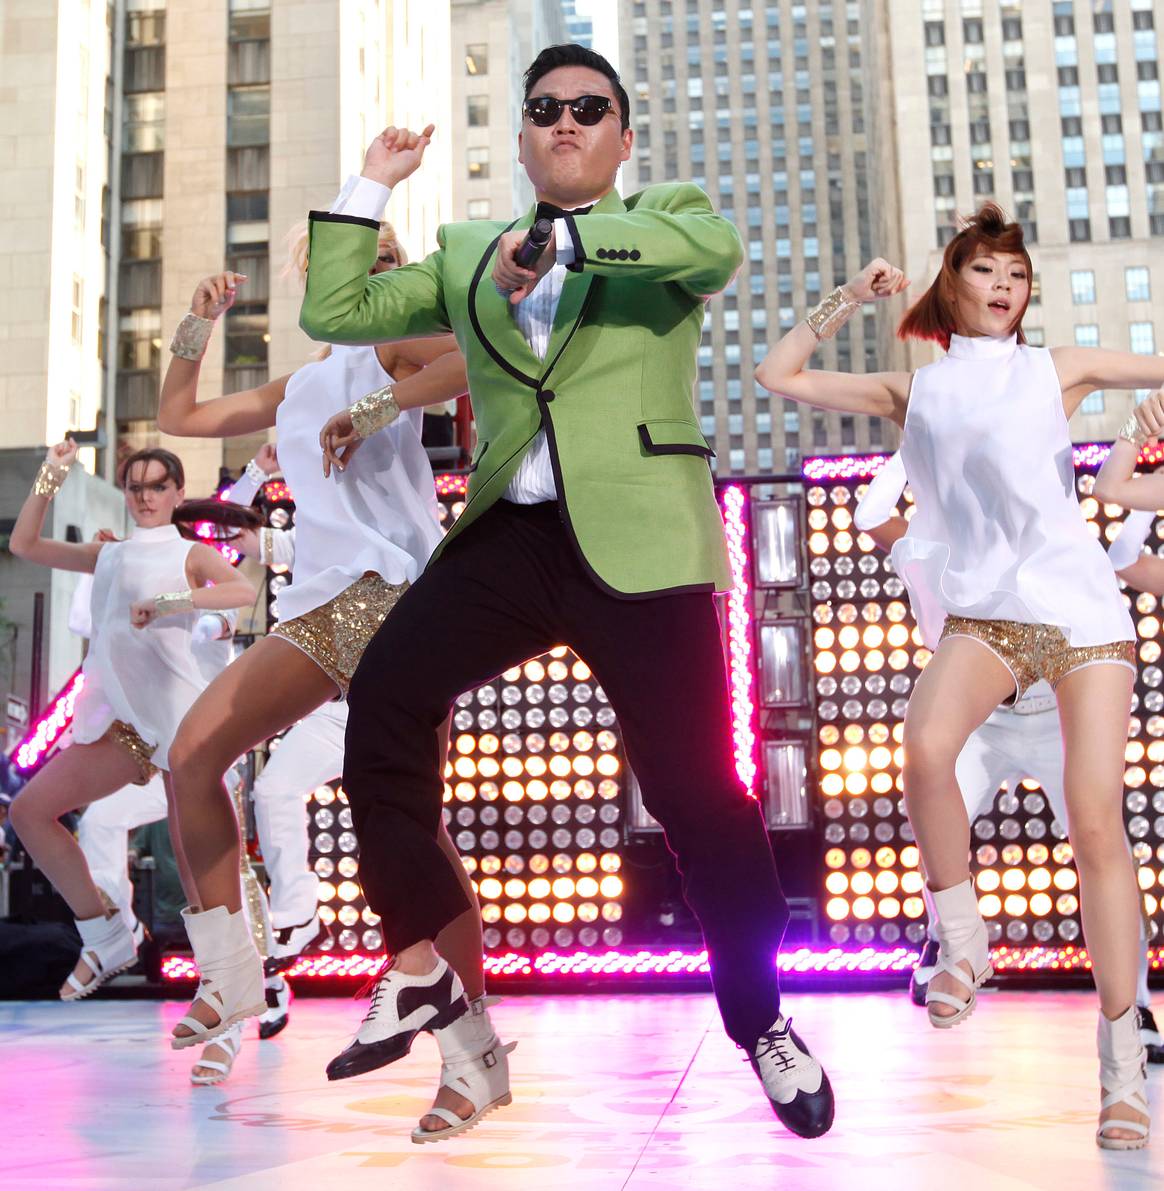 Bild: V&A; PSYs Gangnam Style, bei Today, 2012, New York, USA. Mit freundlicher Genehmigung von Jason Decrow, Invision, AP, Shutterstock